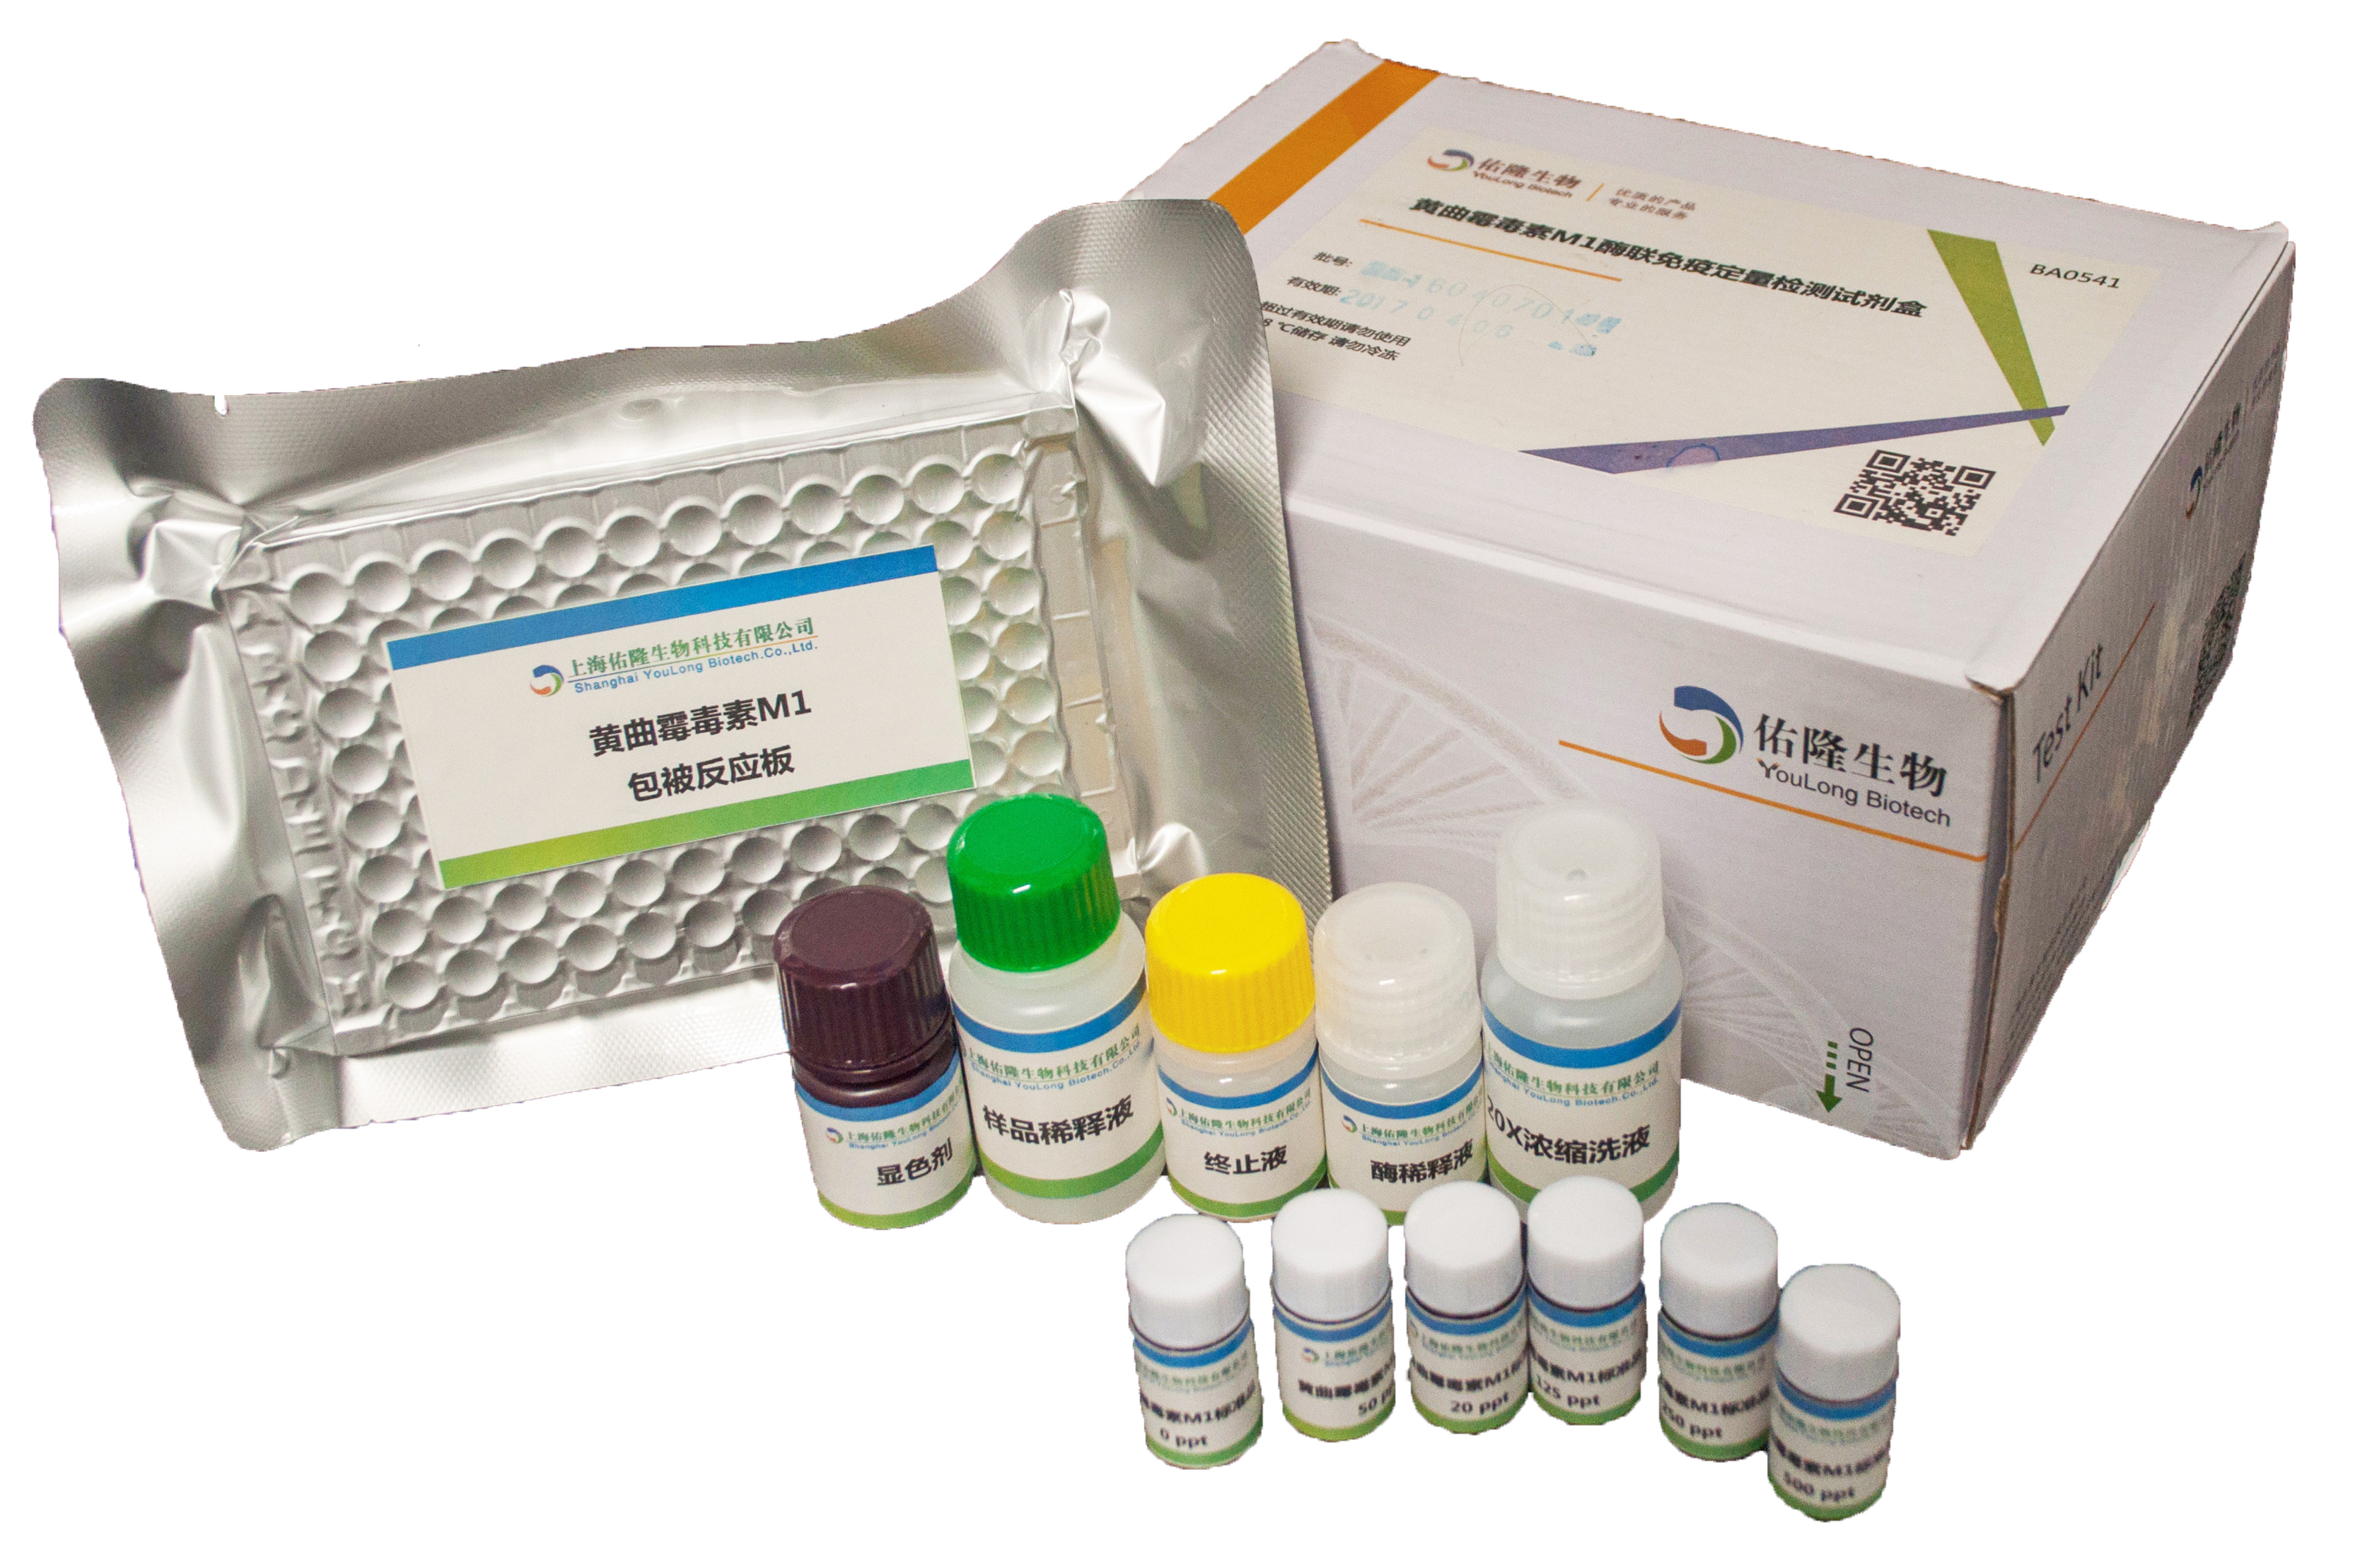 黄曲霉毒素M1(AFM1)酶联免疫定量检测试剂盒